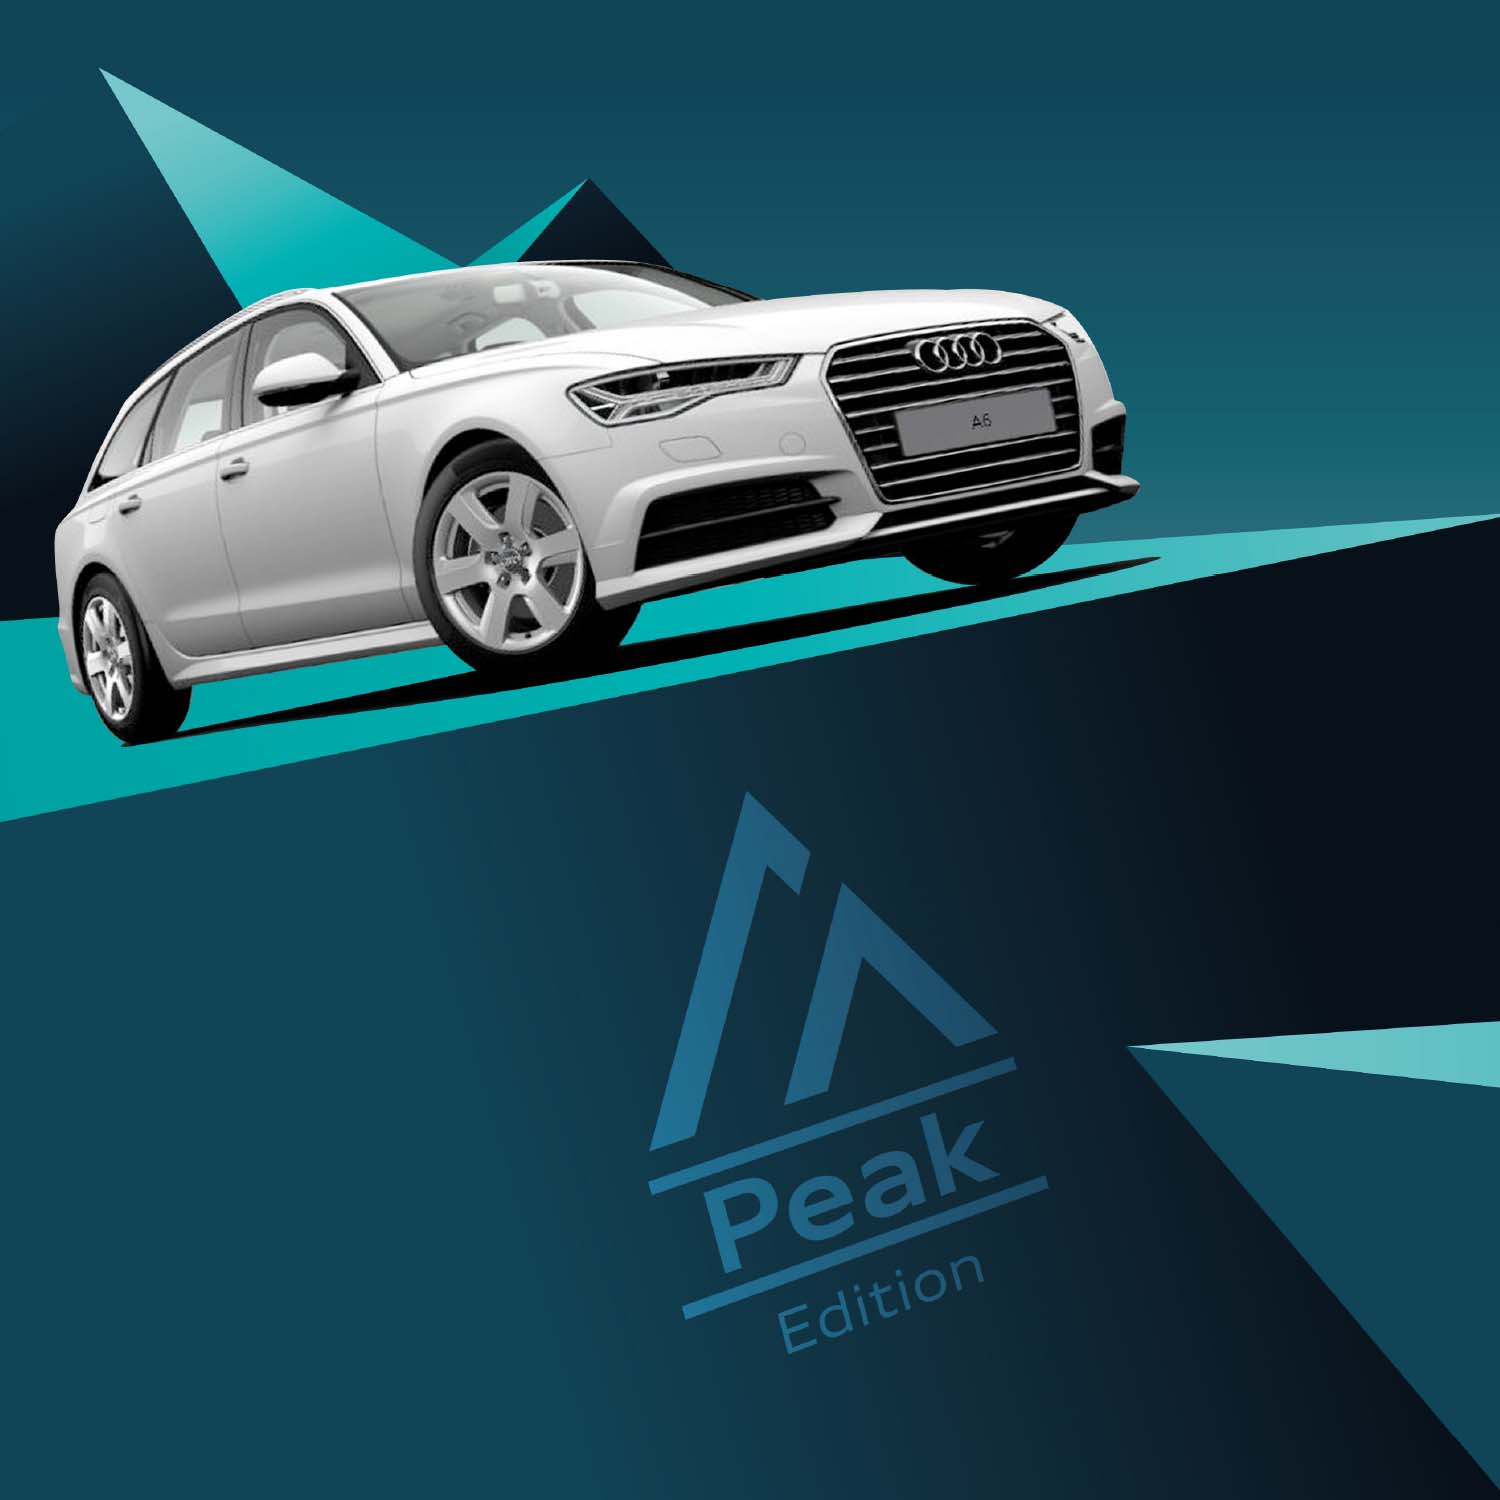 Audi Peak Kampagne Sondermodelle Kachel